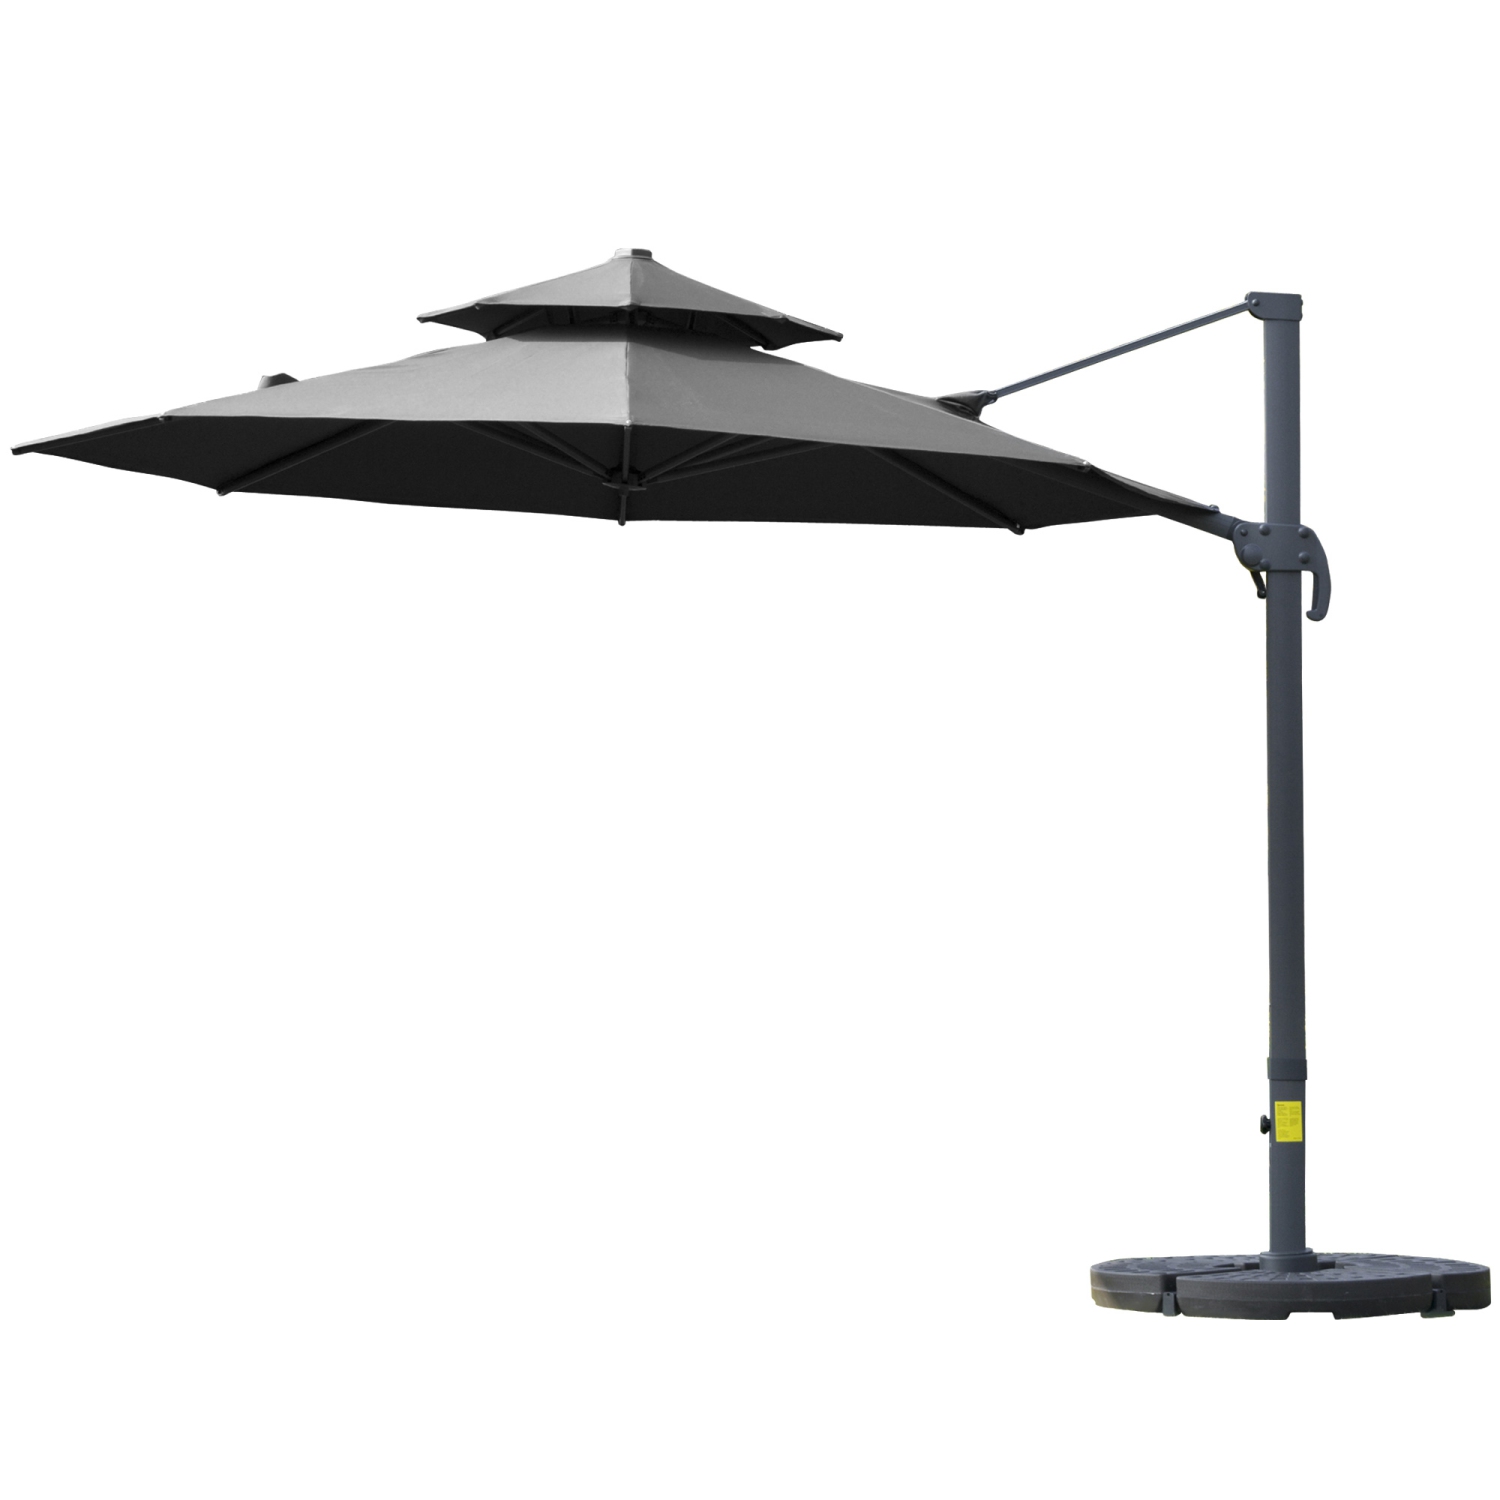 Outsunny 11ft Outdoor Cantilever Umbrella Rotatable Sun Shade Market